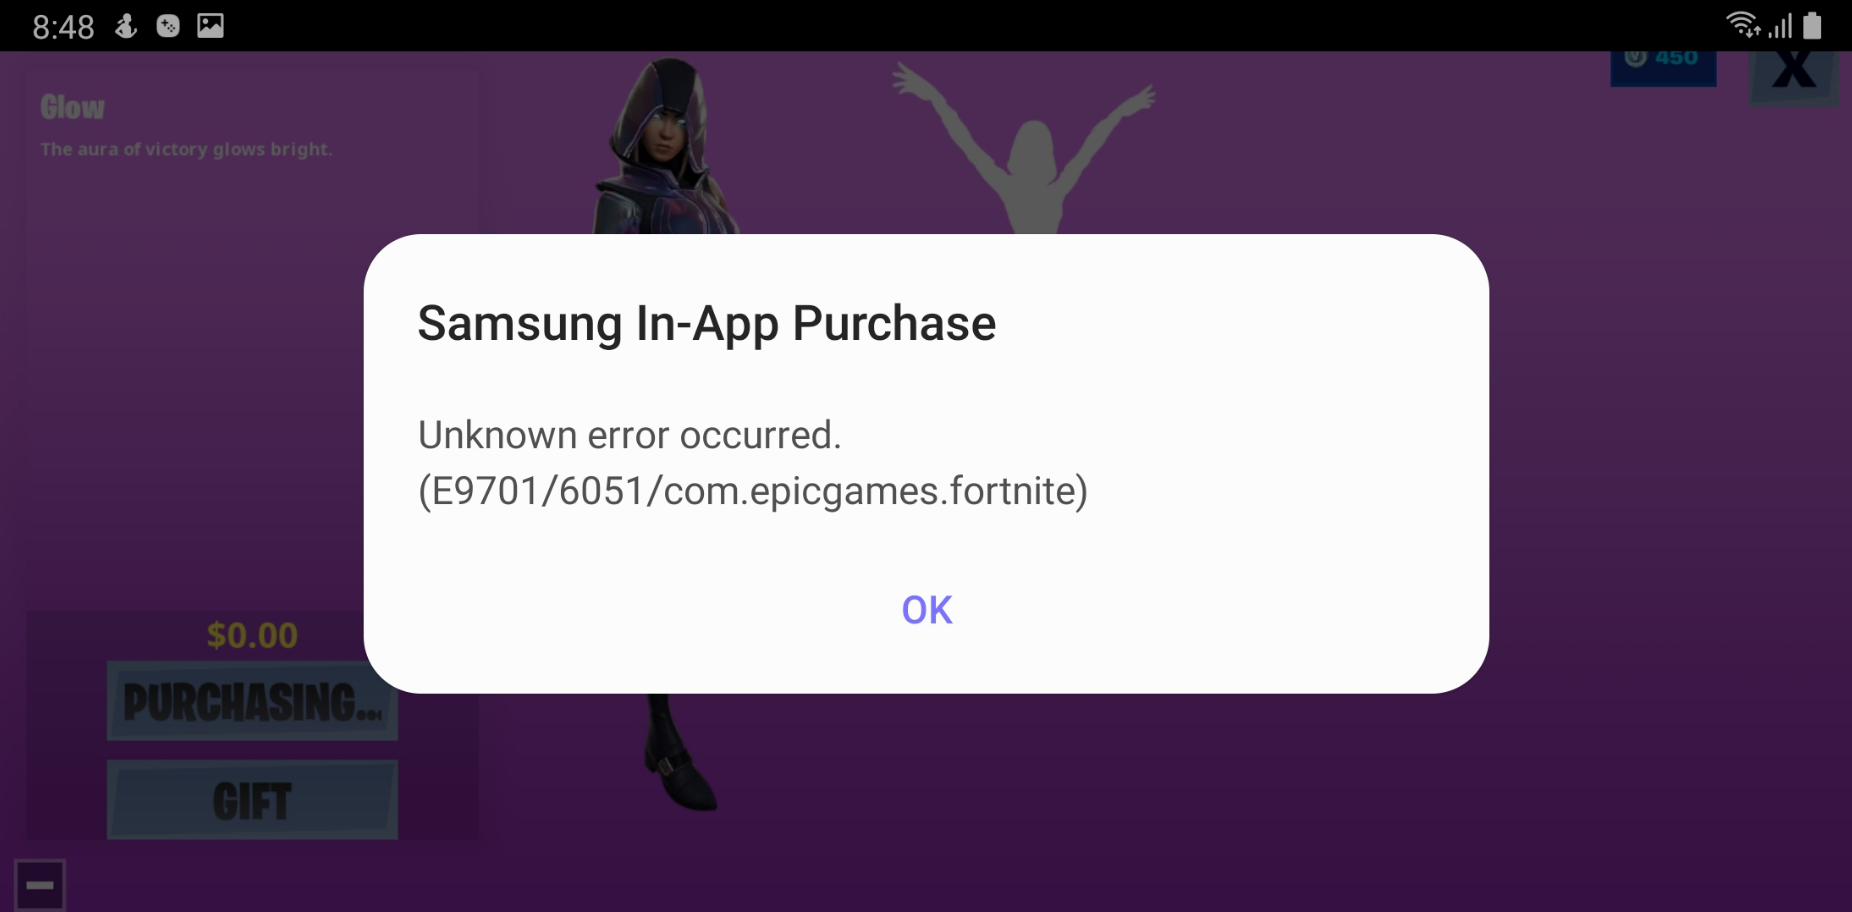 Samsung In-App Purchase error